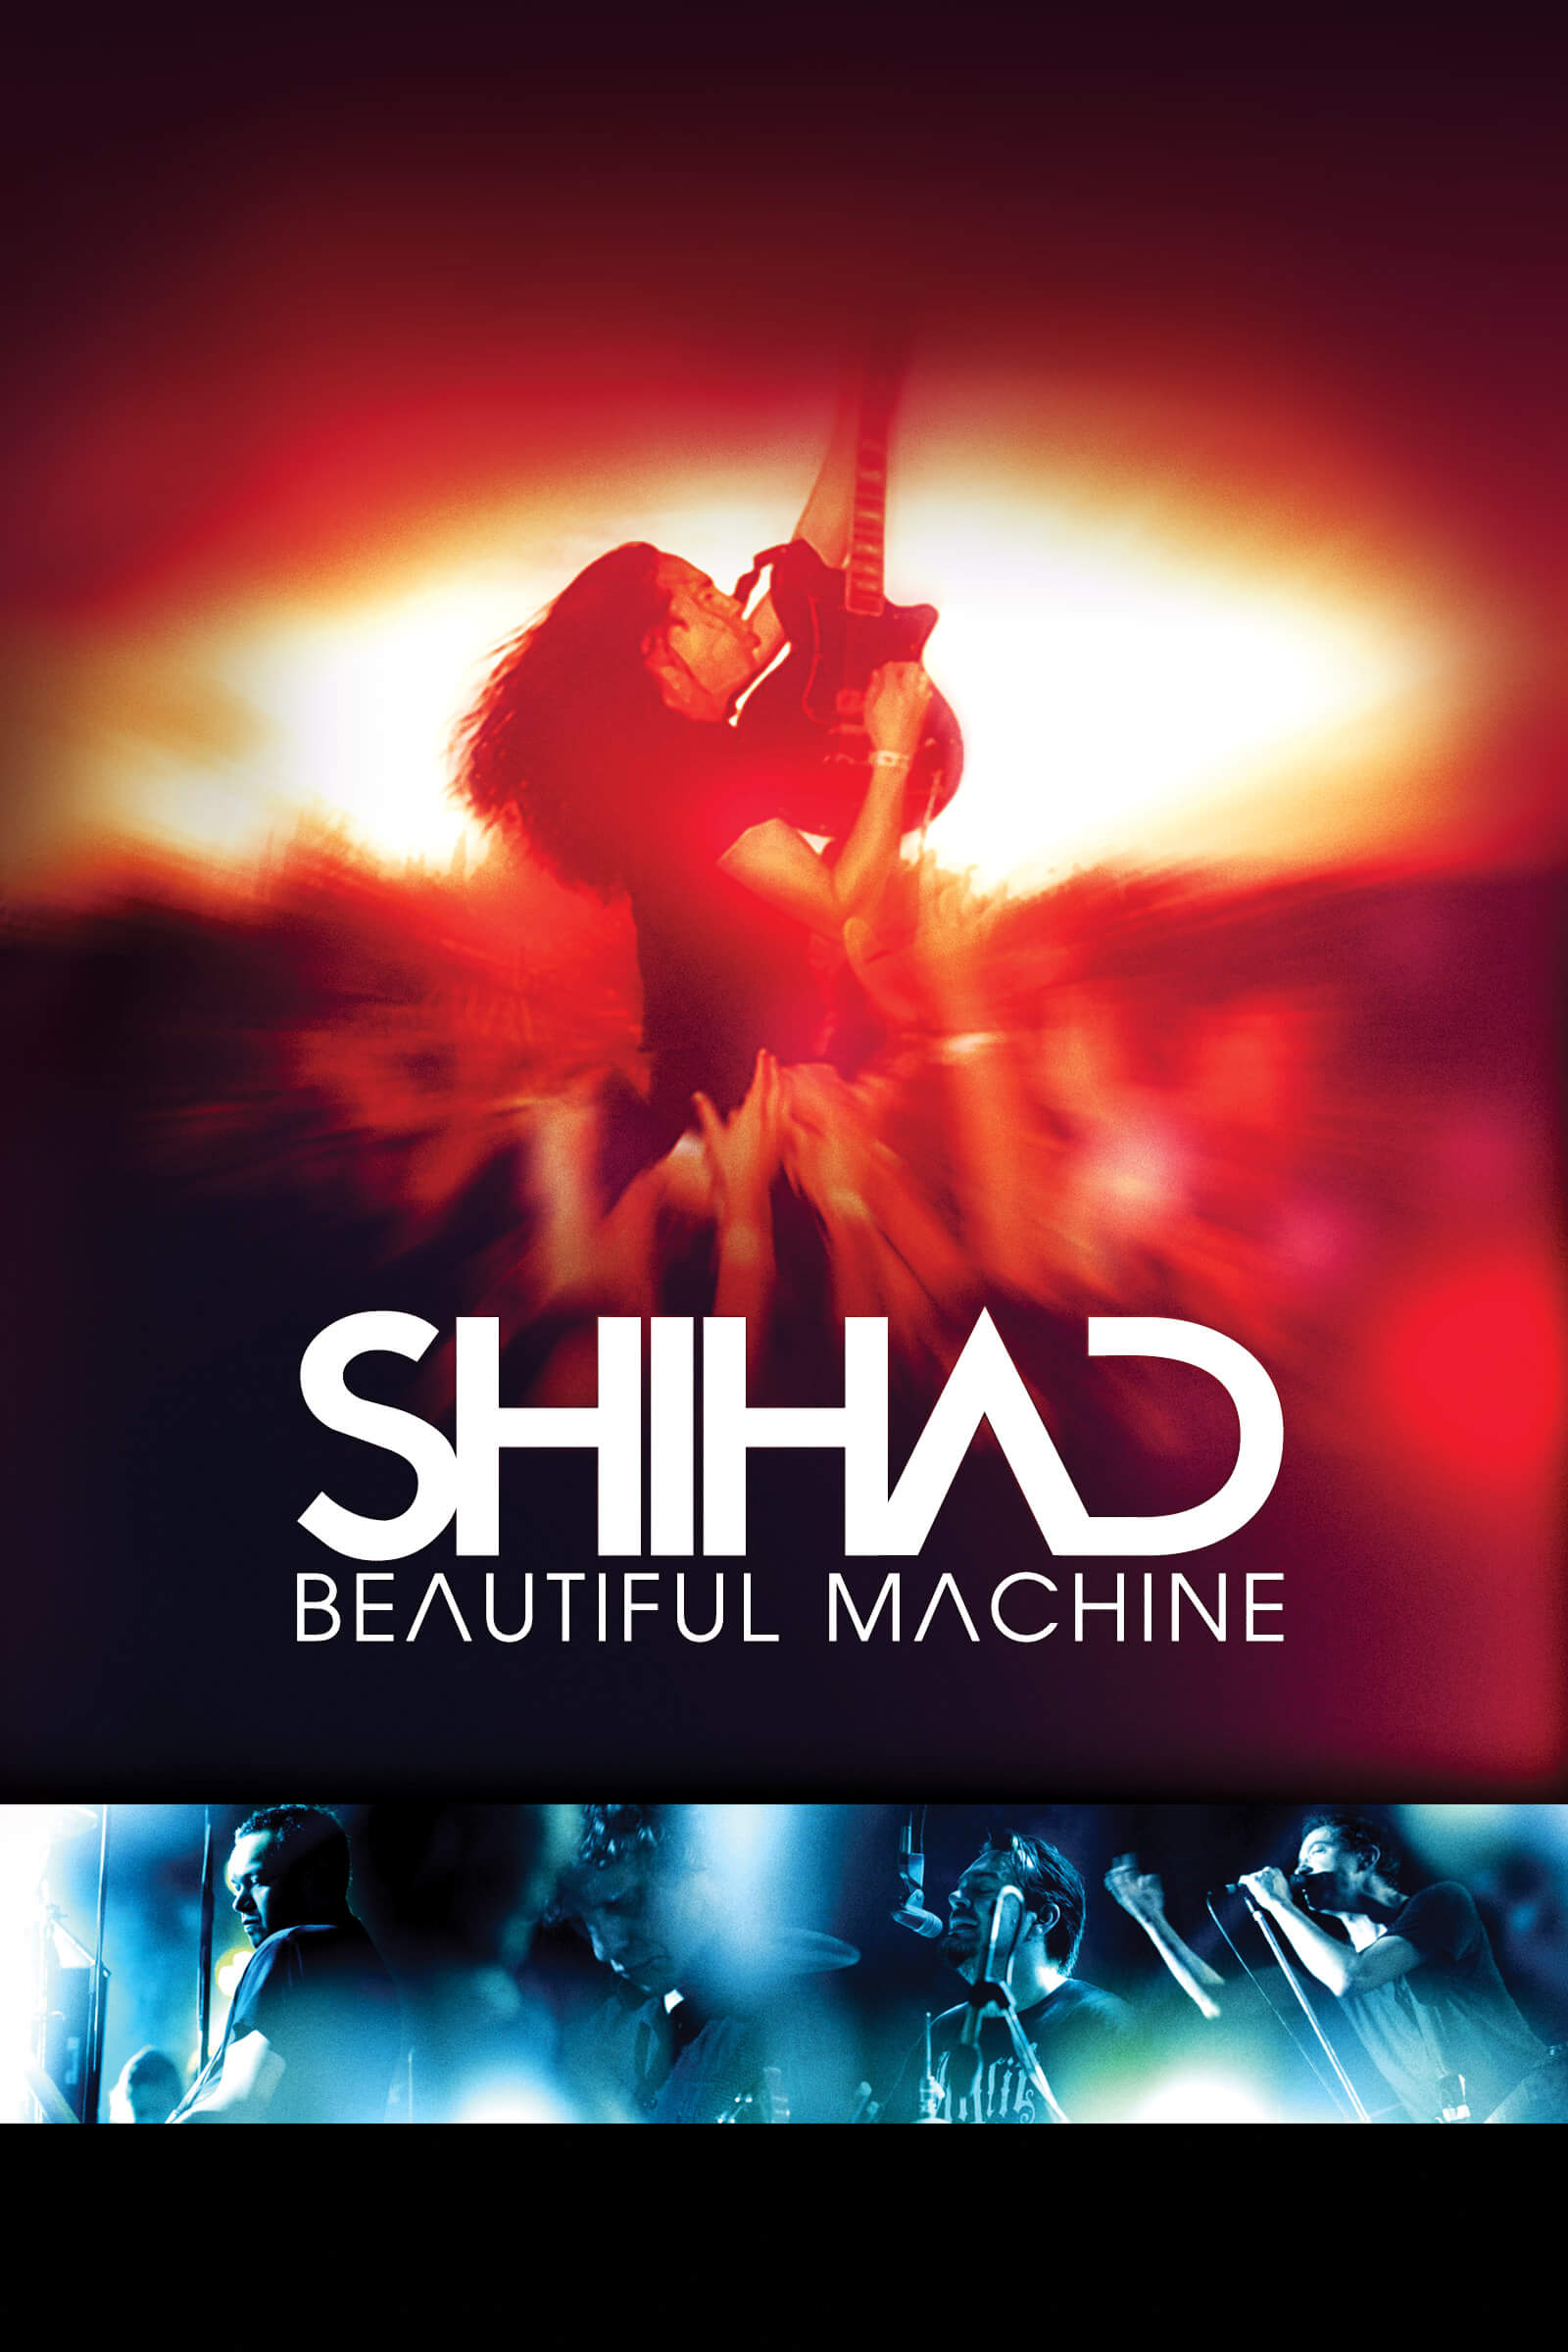 Where to stream Shihad Beautiful Machine